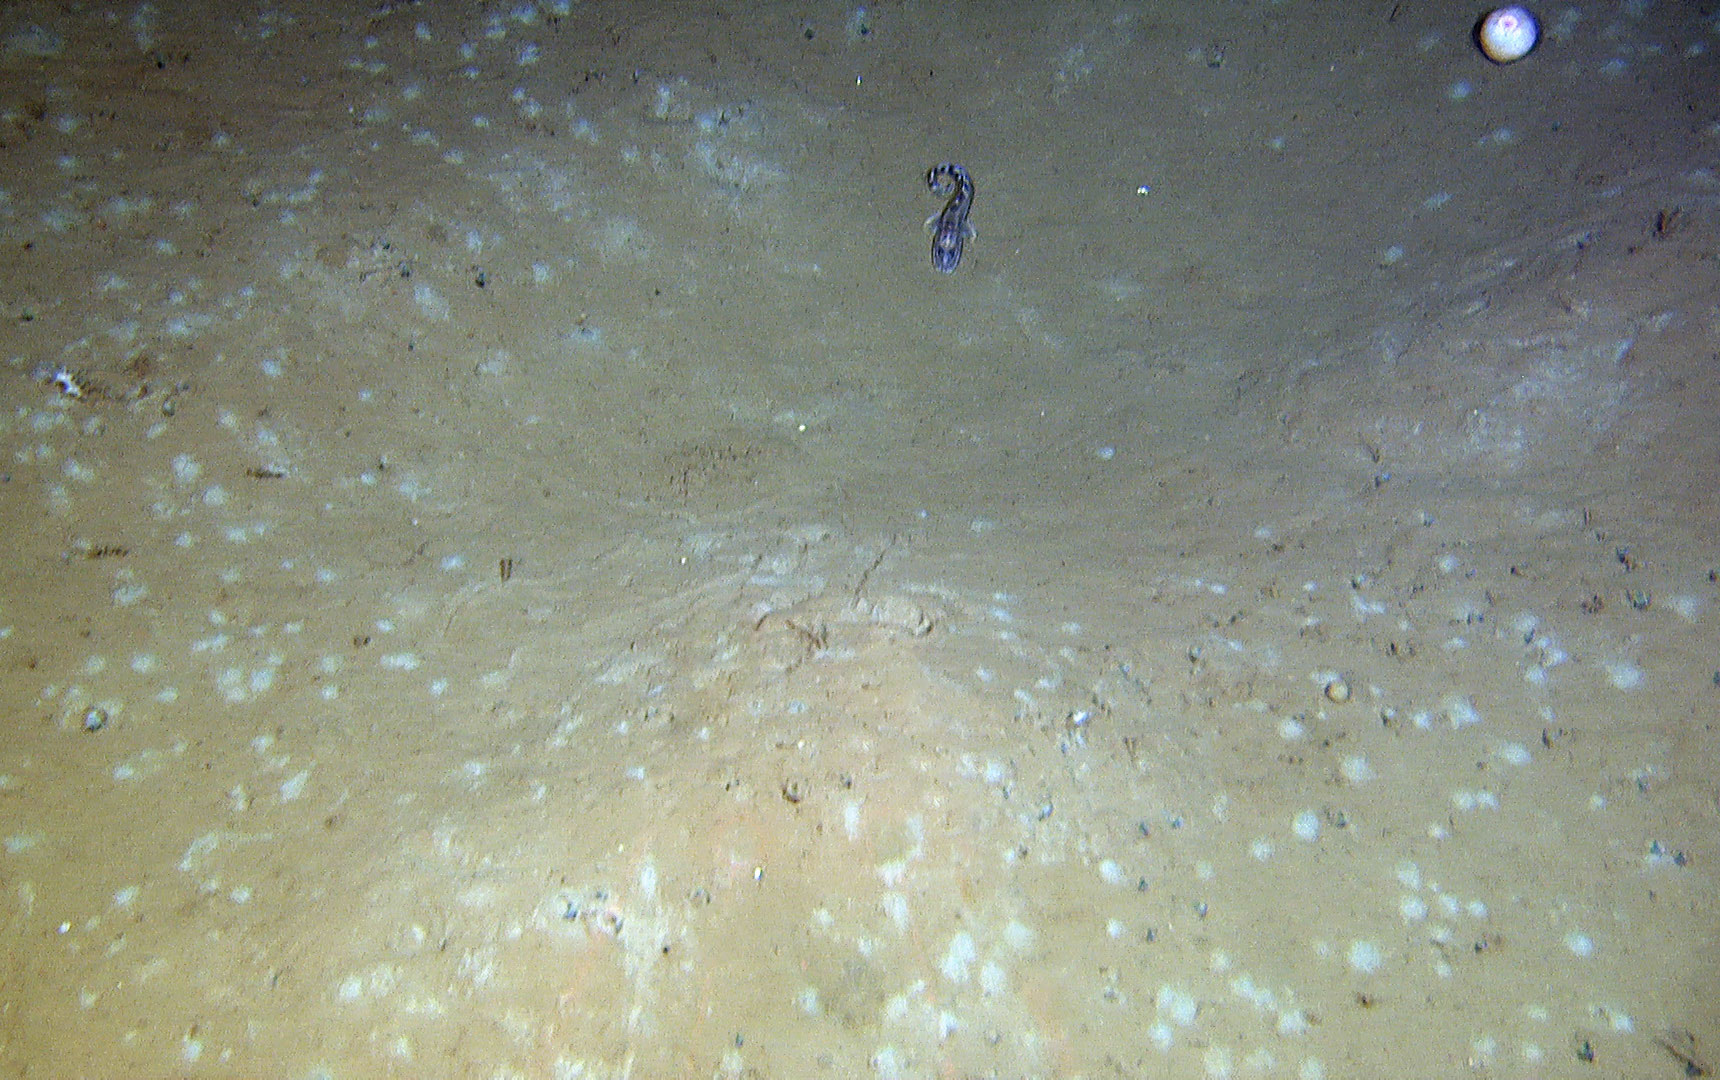 Bilde av sandbunn med lyse flekker, under hver flekk ligger det en musling som ikke viser.